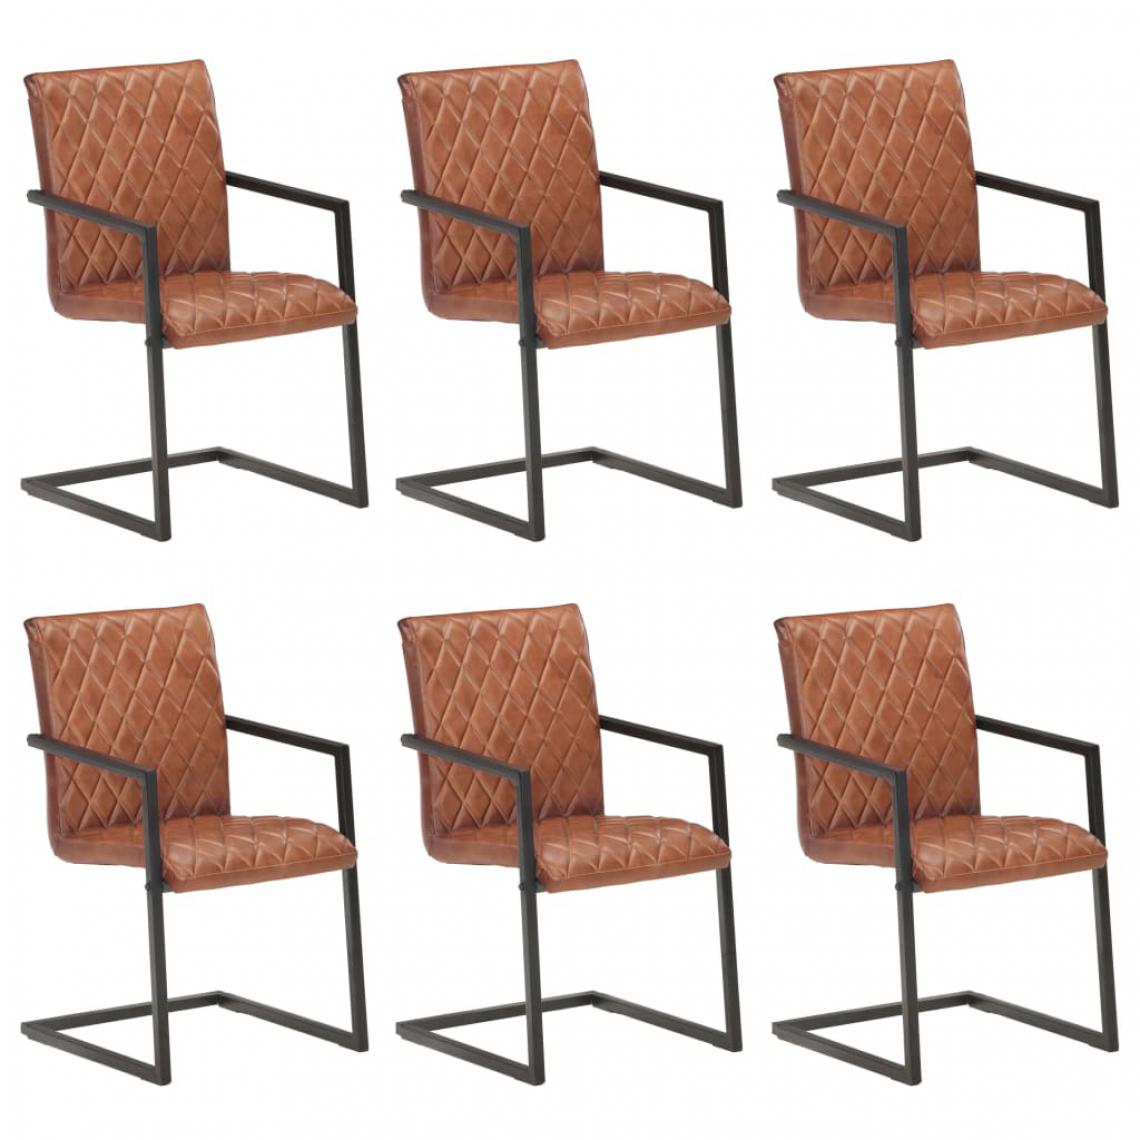 Icaverne - Admirable Fauteuils et chaises categorie Yamoussoukro Chaises de salle à manger cantilever 6pcs Marron Cuir véritable - Chaises